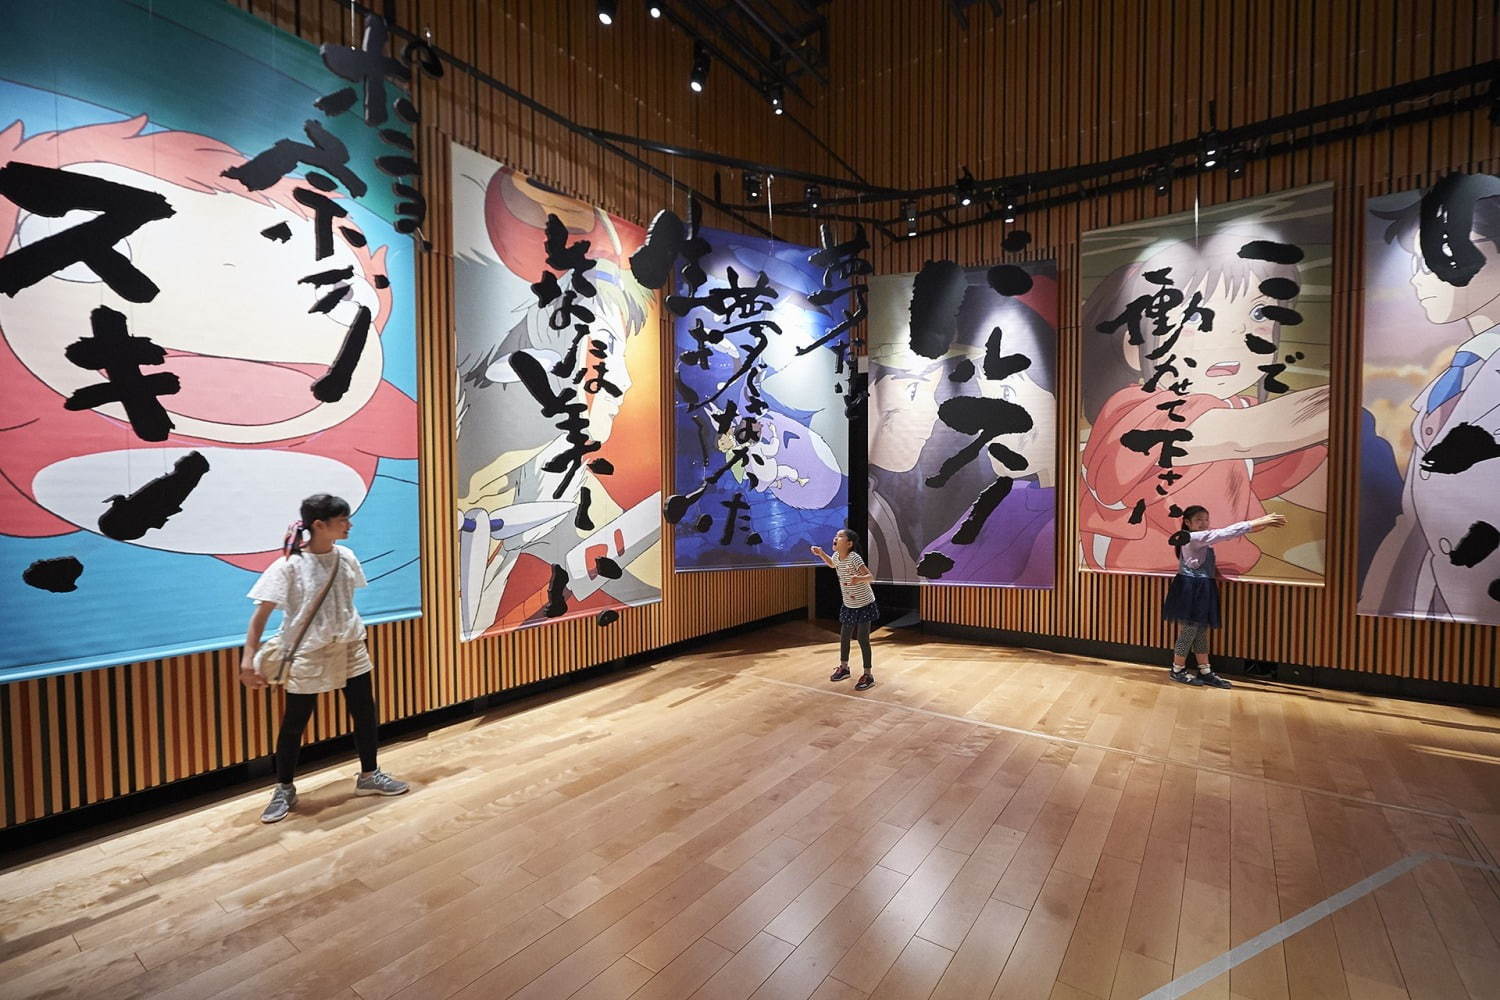 하야오 옹의 신작 개봉에 맞물려 일본 내에서는 그야말로  '지브리' 행사가 많이 열렸는데요, 그 중 '지브리' 역사를 총망라한 '지브리 스튜디오' 전시 모습. 